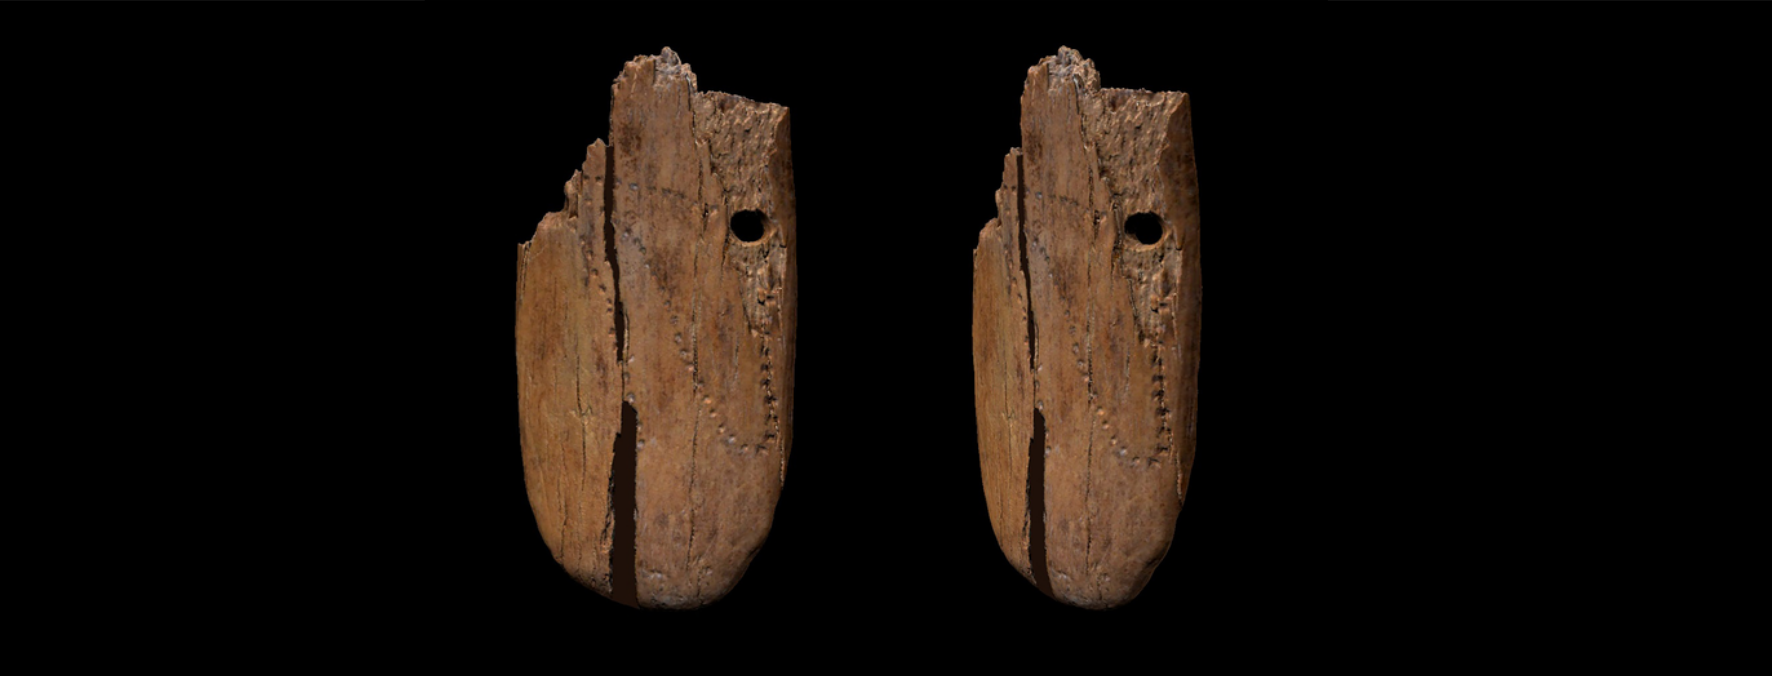 Un pendentif en ivoire de mammouth orné de ponctuations a été découvert dans une grotte en Pologne et daté d'il y a 41.000 ans. © Antonio Vazzana, BONES Lab